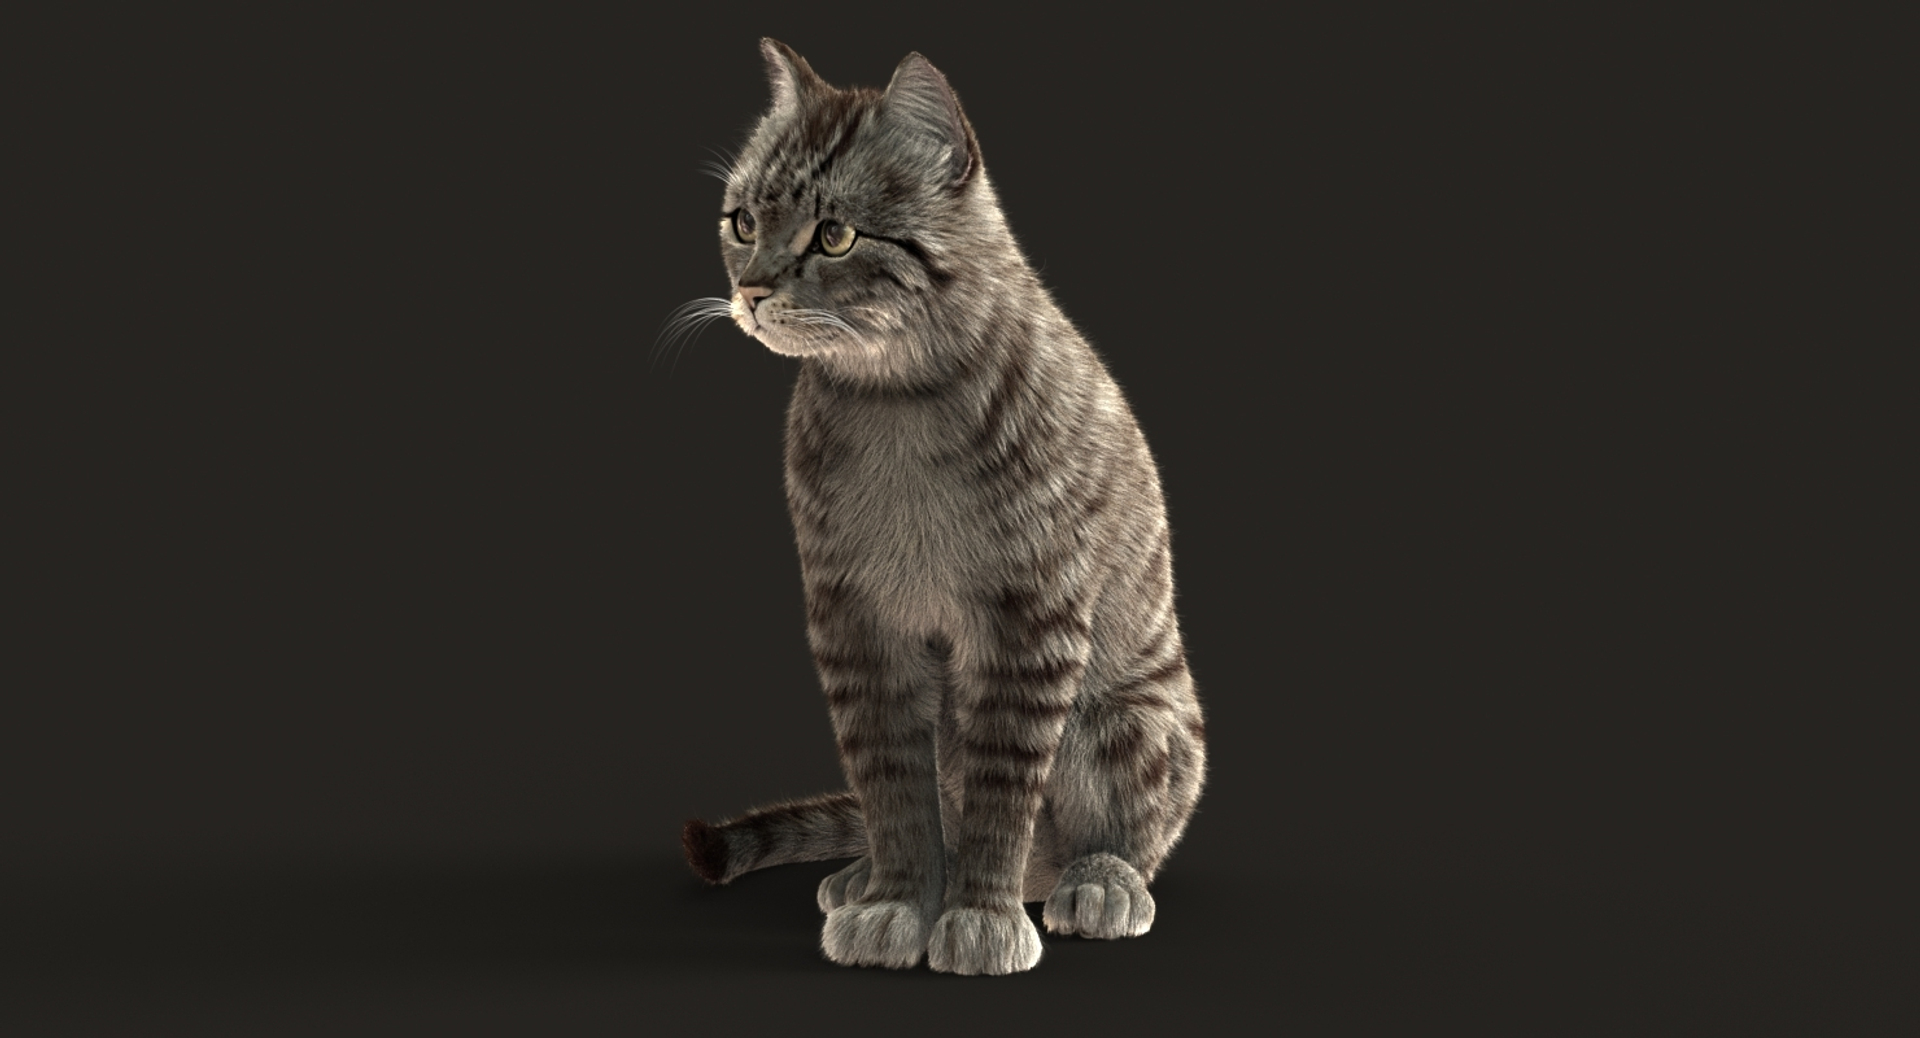 3D cat animation https://p.turbosquid.com/ts-thumb/5i/URL6KR/KcCThovJ/turn/jpg/1536823966/1920x1080/turn_fit_q99/e58c78e1443c085da668f2501bb46d13191574c4/turn-1.jpg